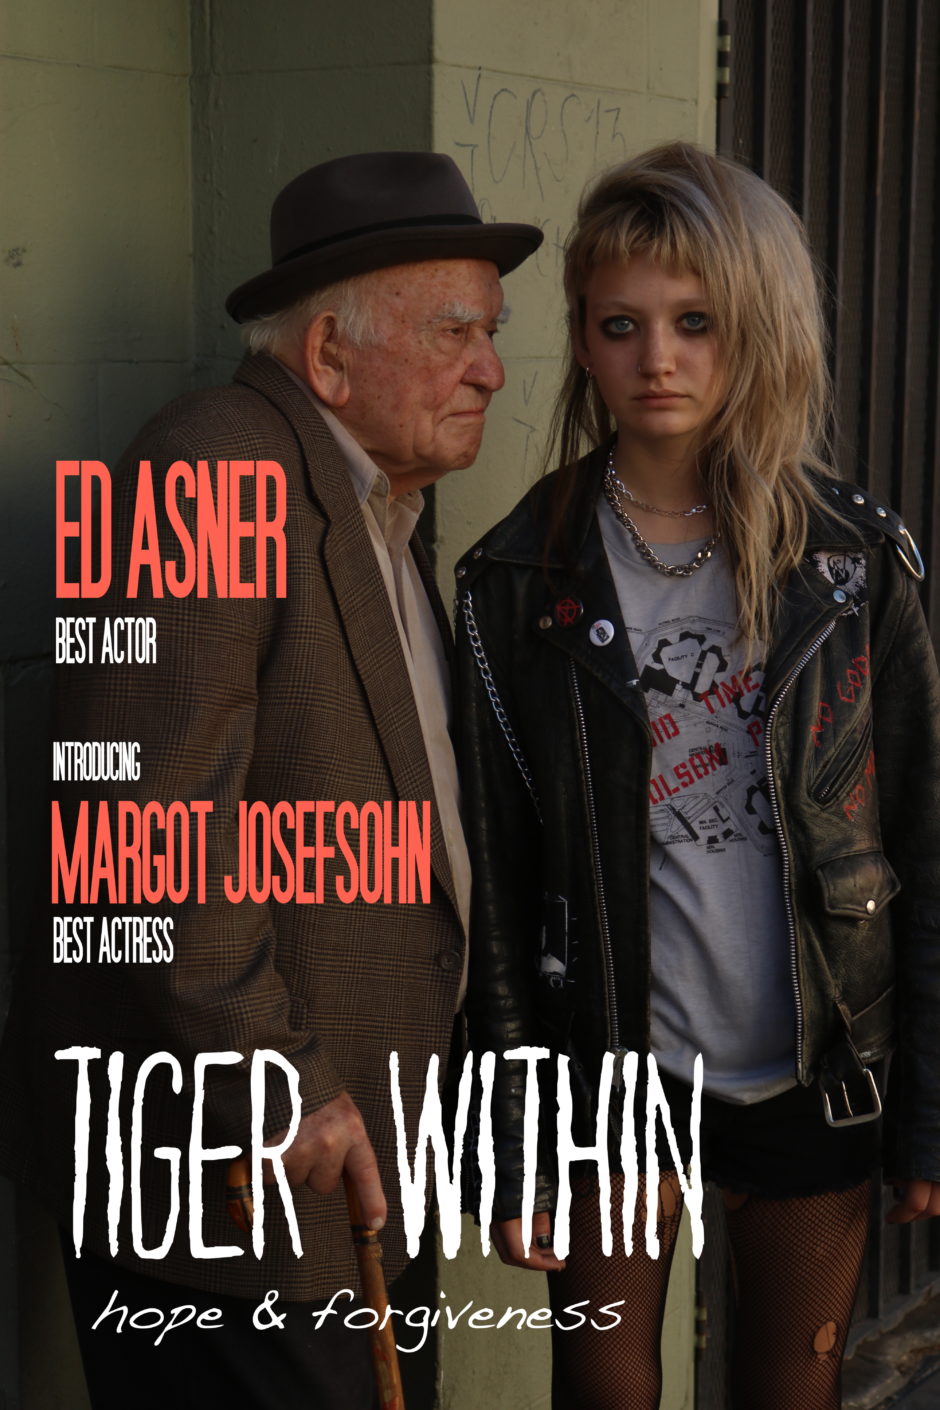 Ed Asner, Margot Josefsohn - Tiger Within